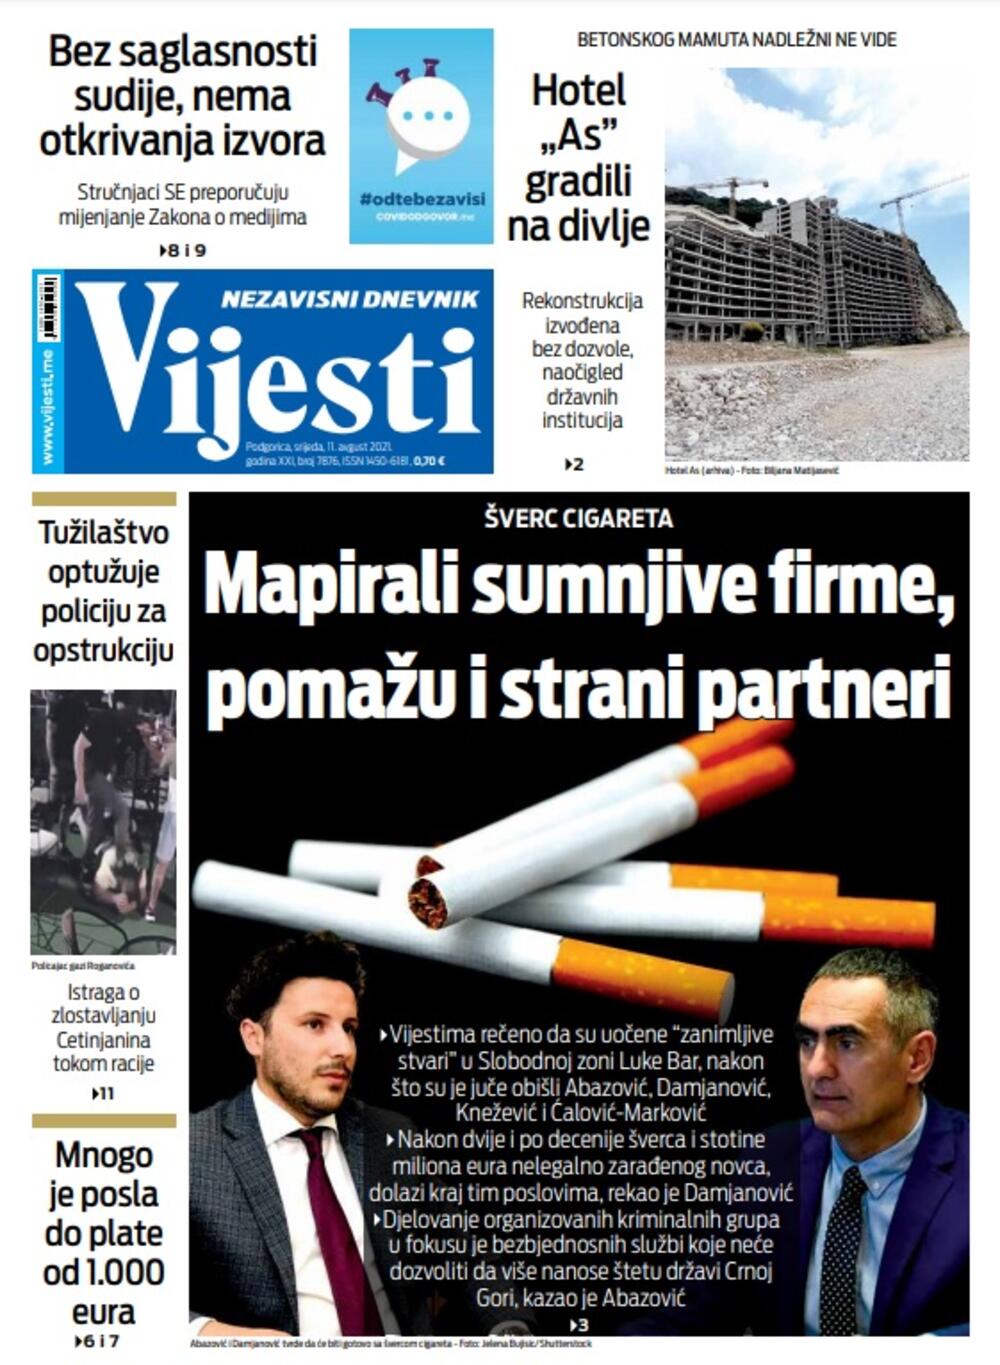 Naslovna strana "Vijesti" za 11. avgust 2021., Foto: Vijesti